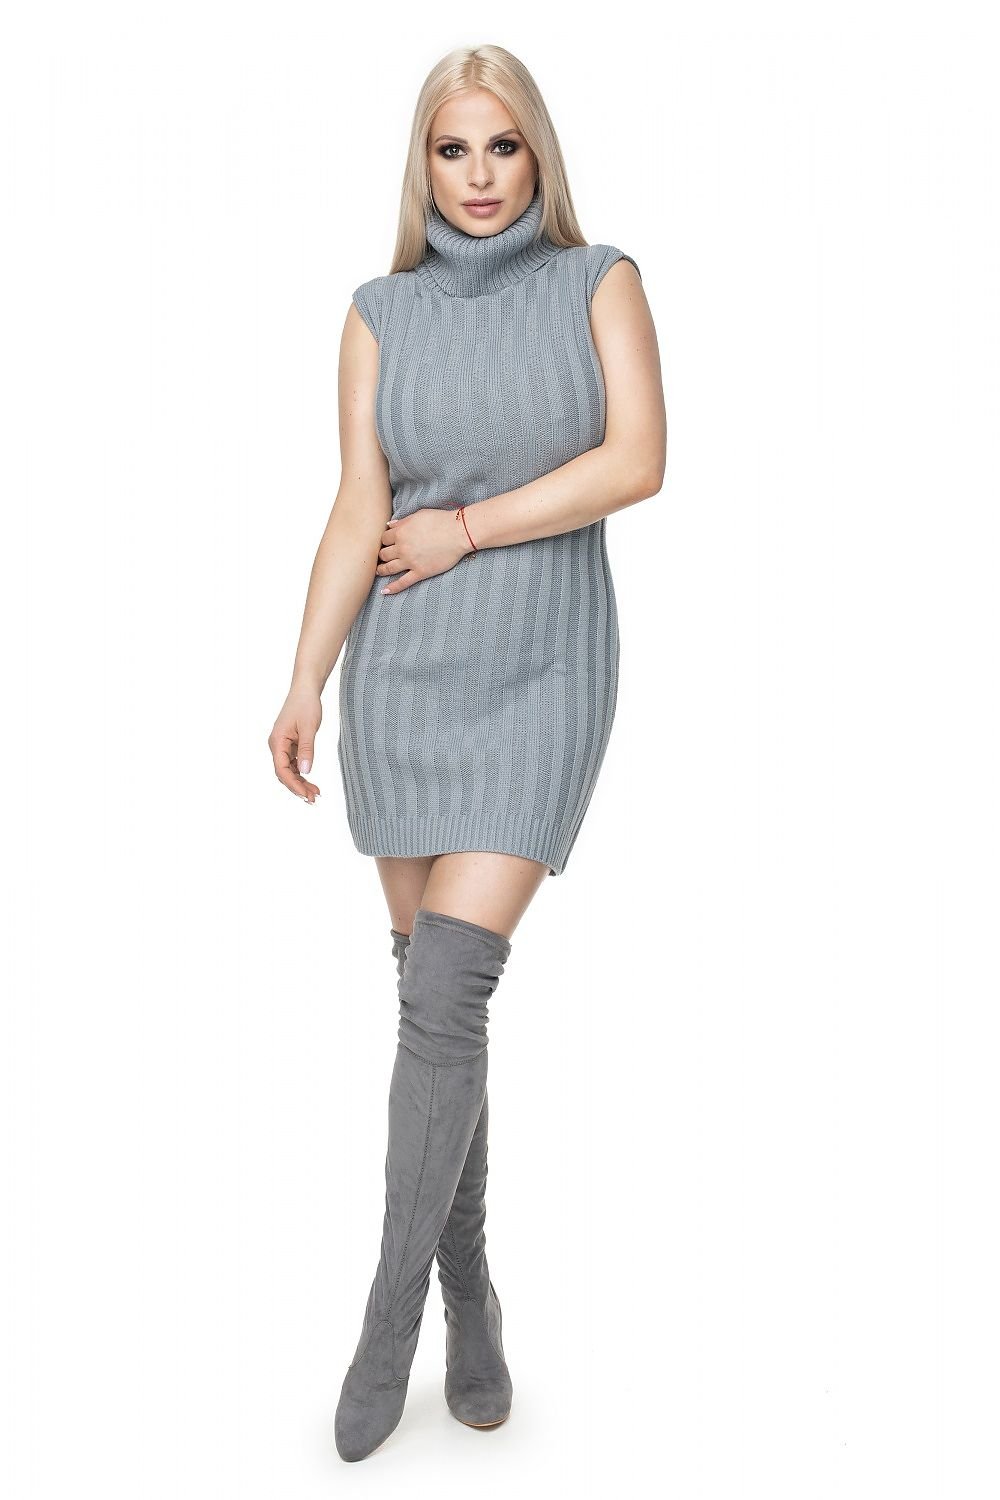 Daydress model 132039 Grey by PeeKaBoo - One Size - Short